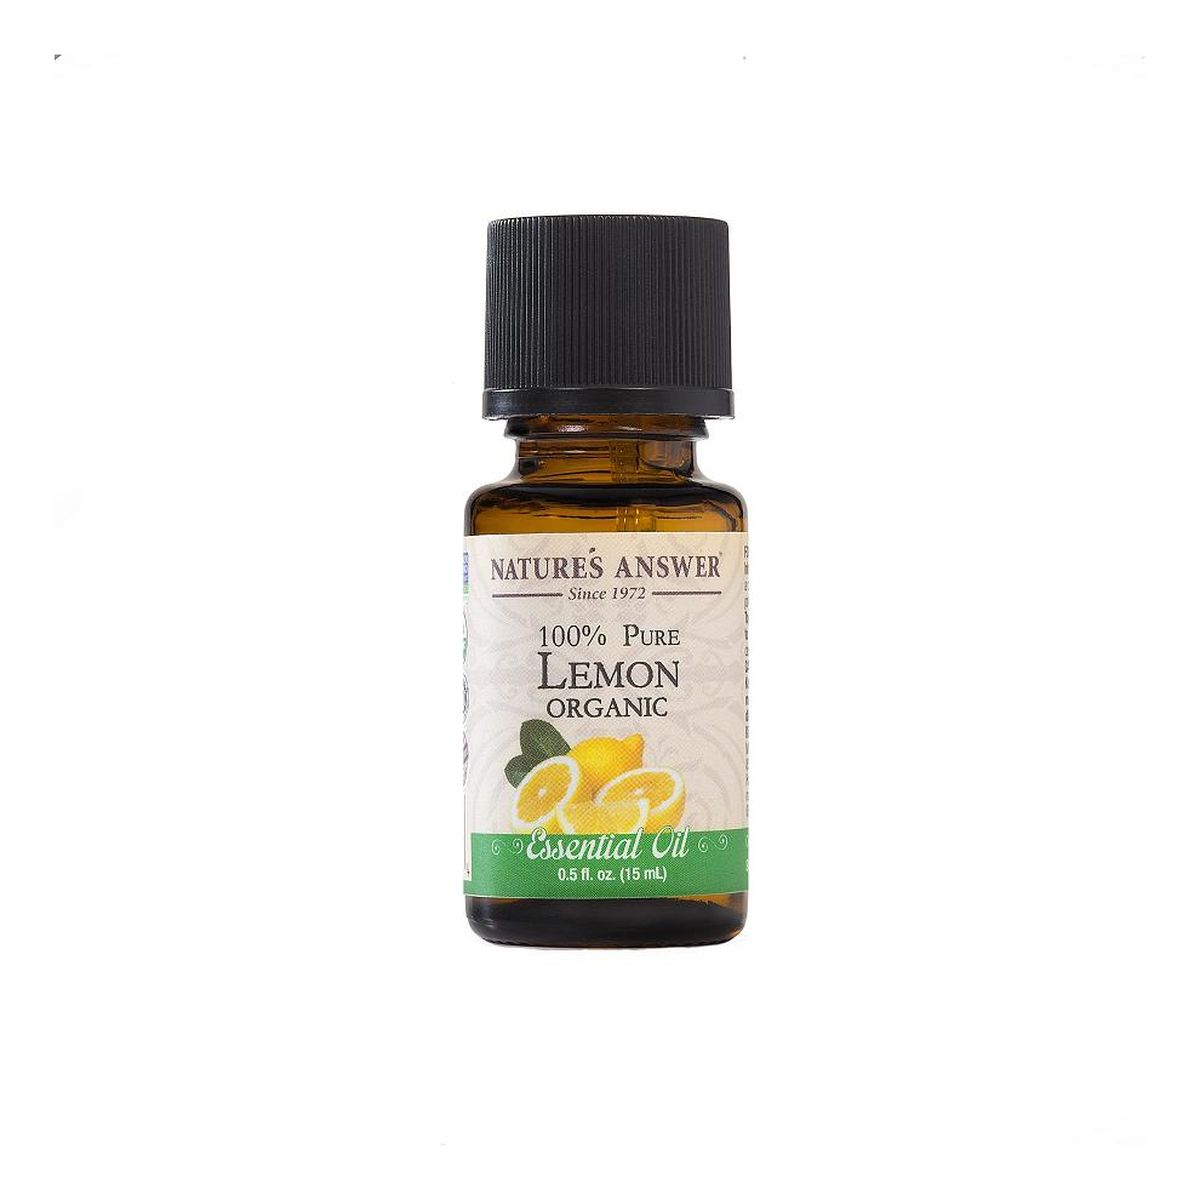 100% Pure Lemon Organic Essential Oil organiczny olejek ze skórki cytryny